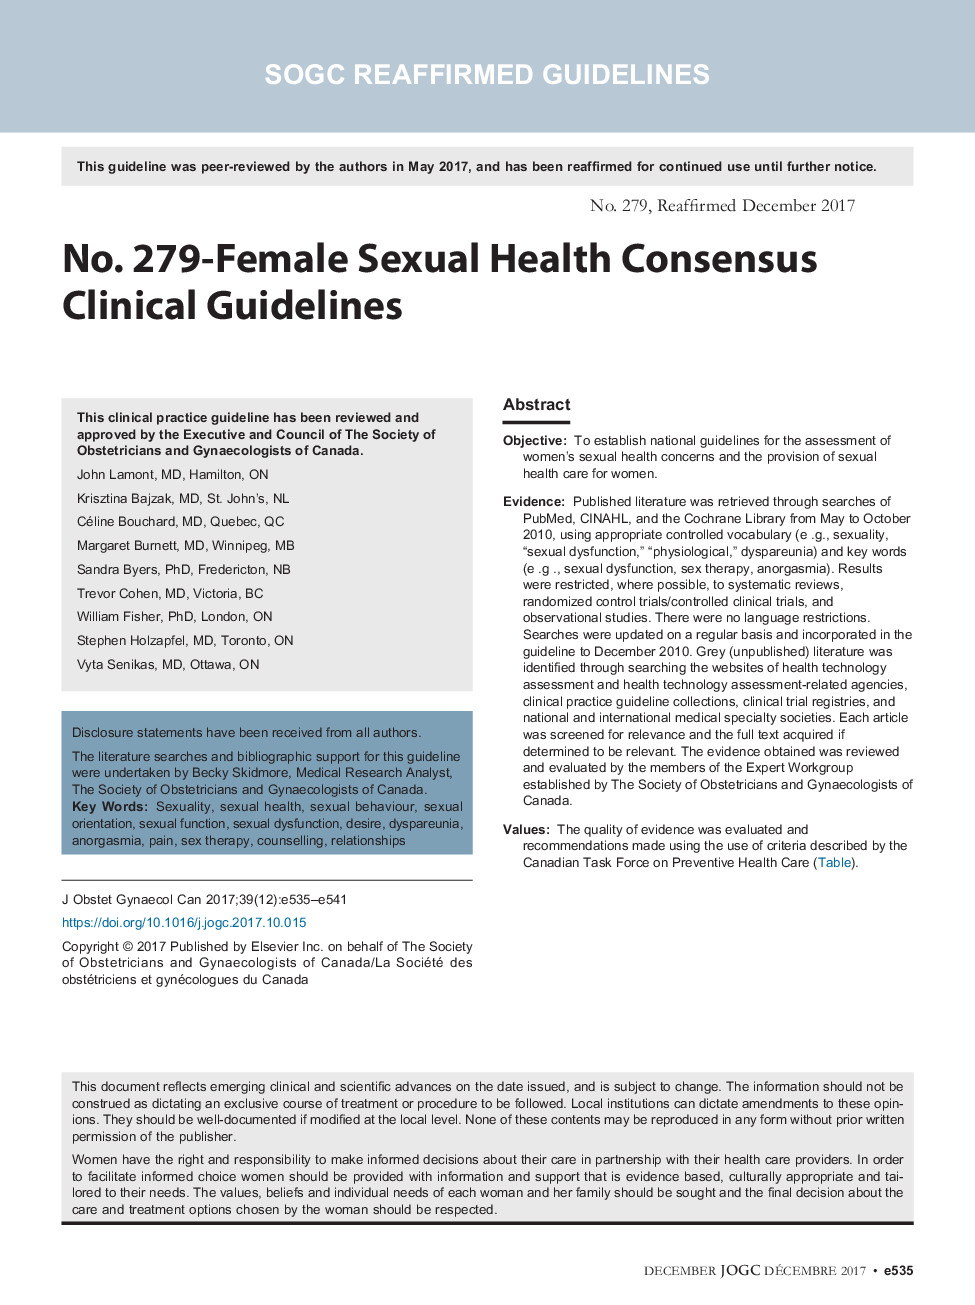 شماره 279- دستورالعمل های بالینی در مورد توافق بهداشتی جنسی زنان 